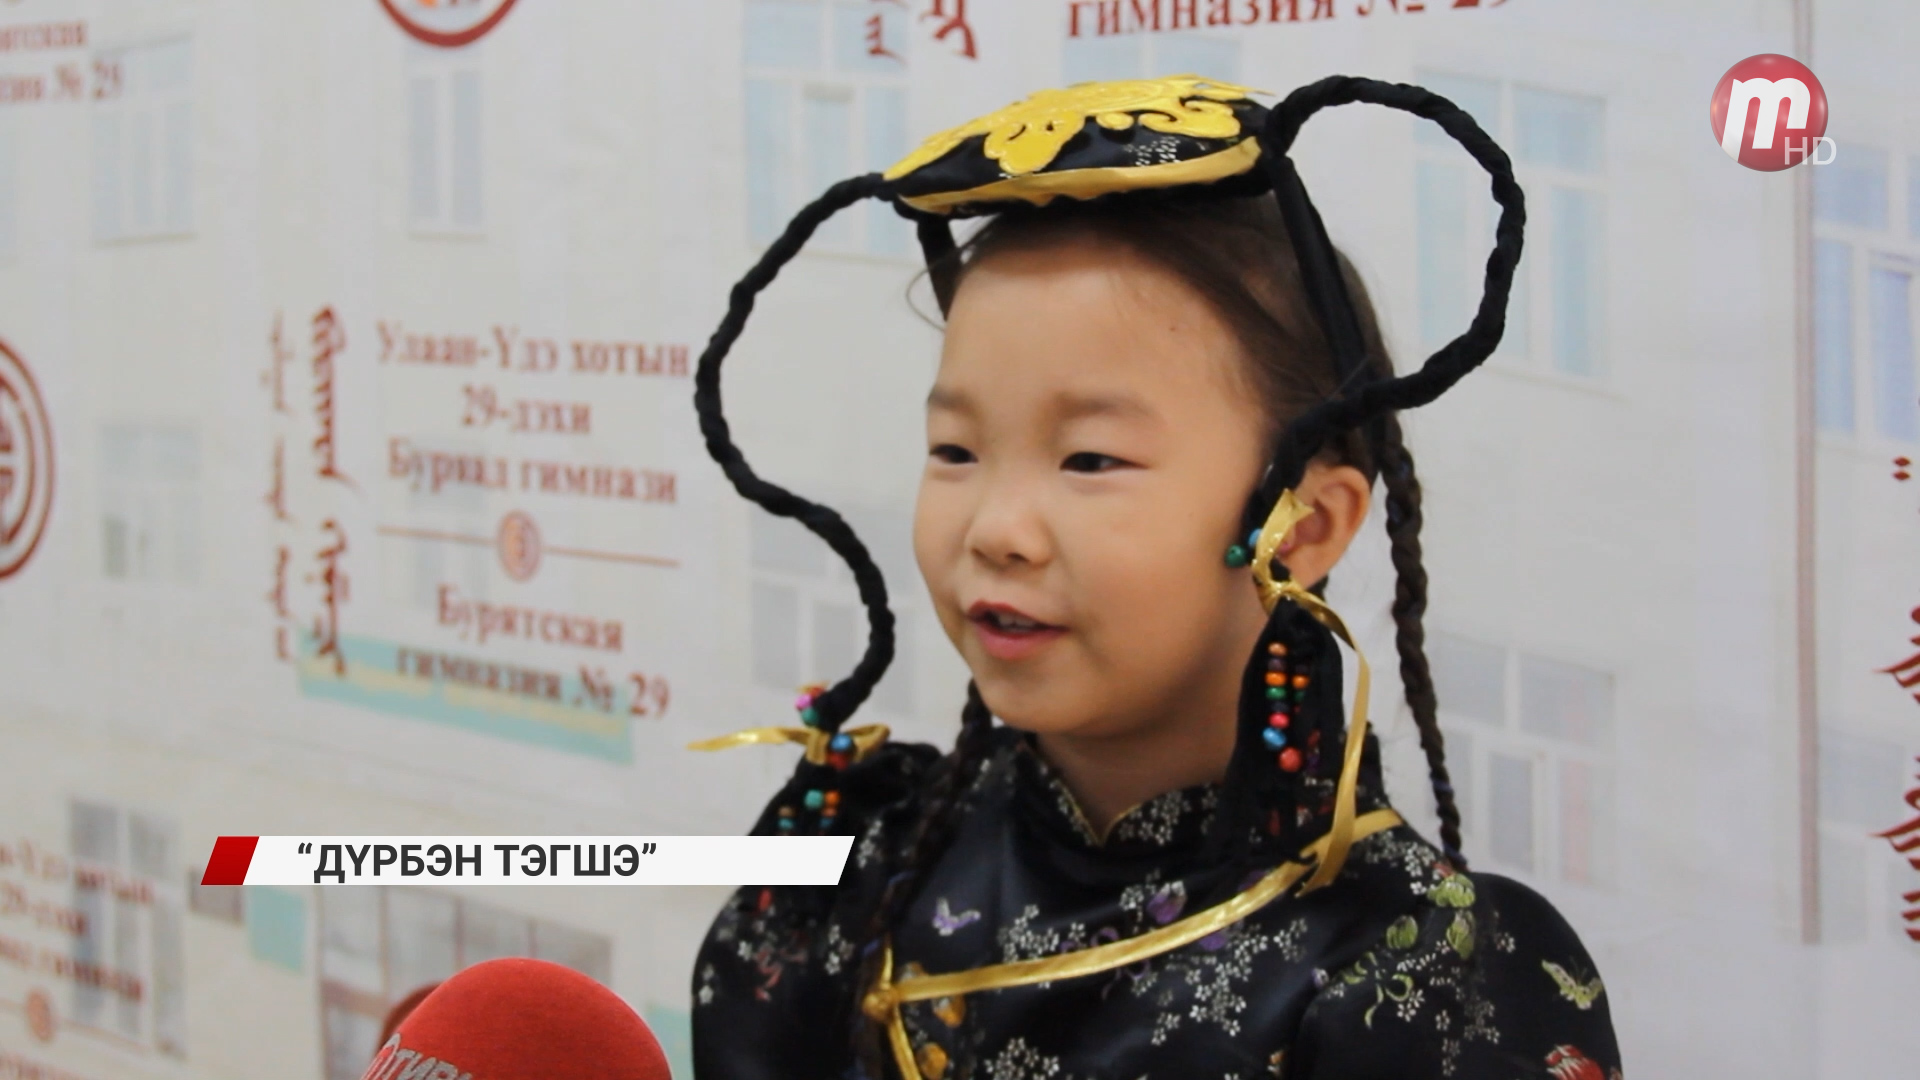 В Улан-Удэ прошла городская олимпиада «Дурбэн тэгшэ» среди учеников начальных классов